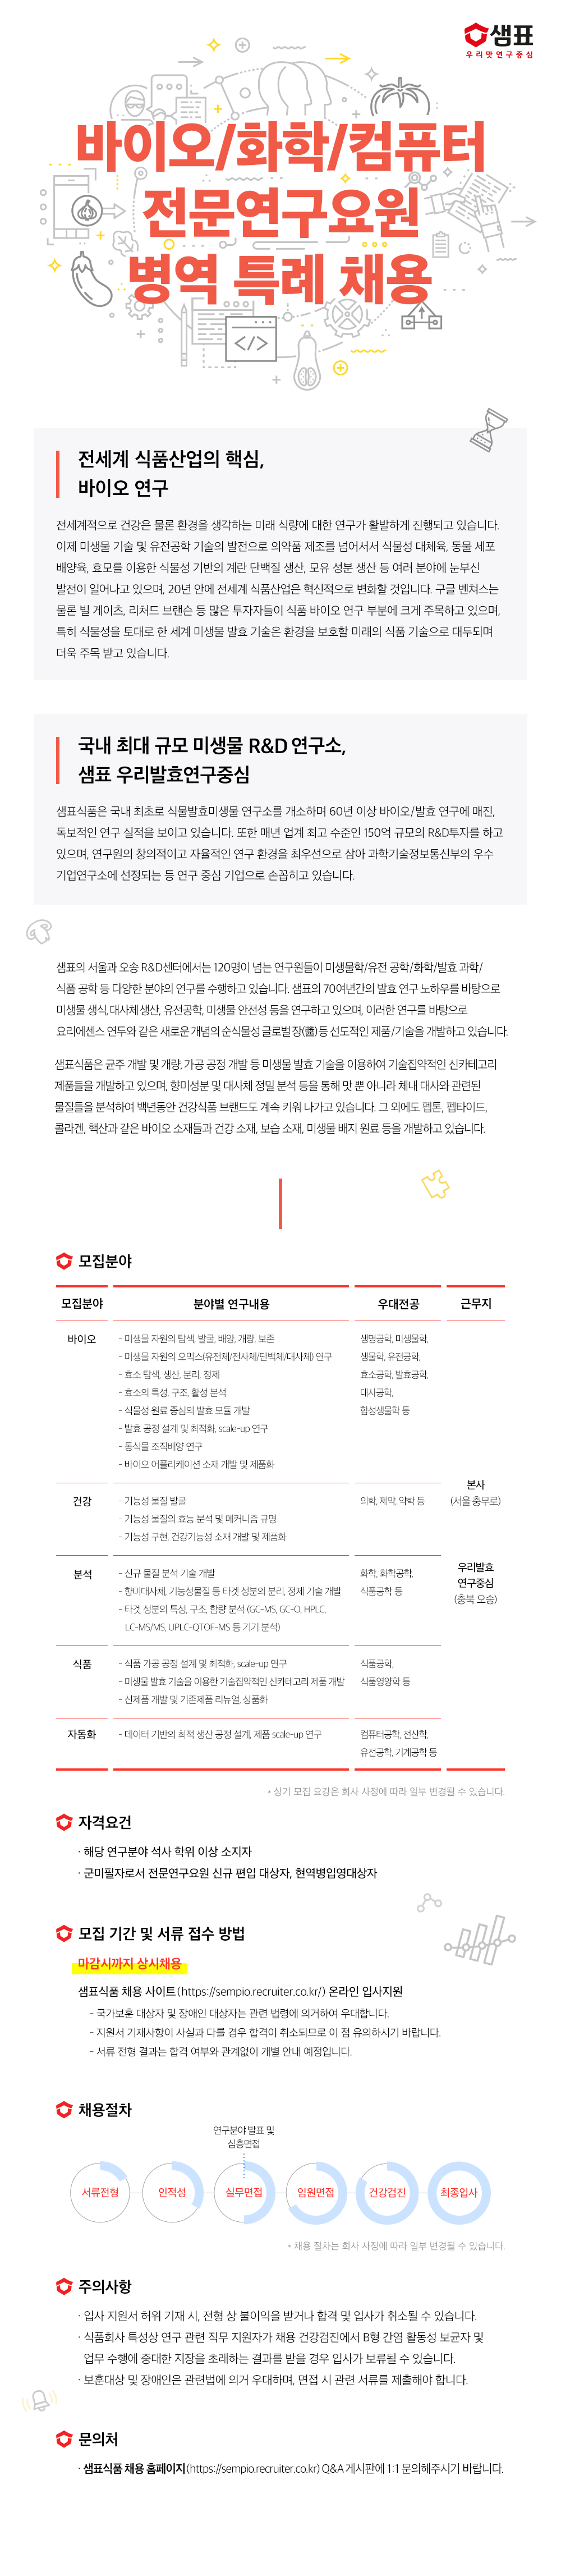 1. 샘표식품_2022_병역특례_채용공고 (1).png